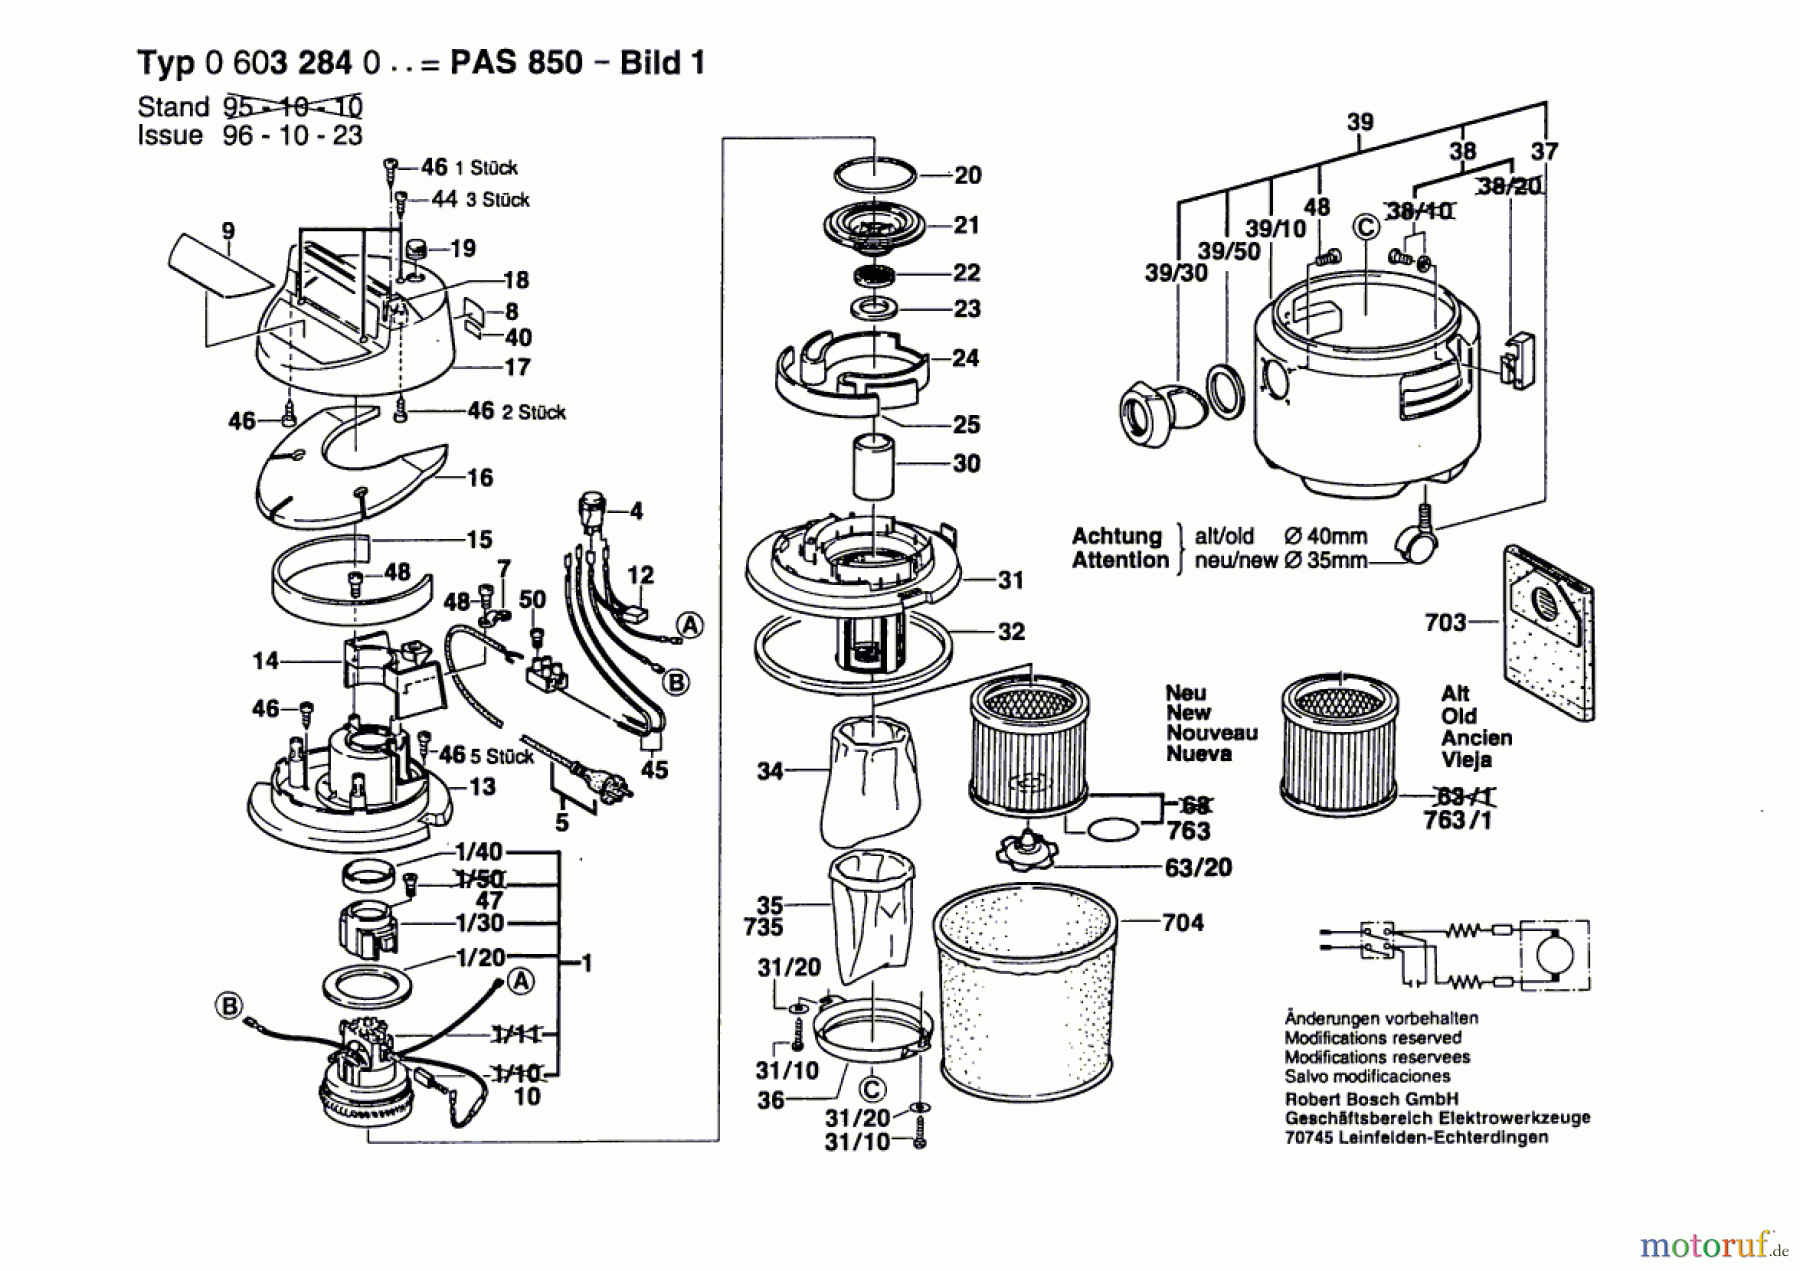  Bosch Werkzeug Allzwecksauger PAS 850 Seite 1